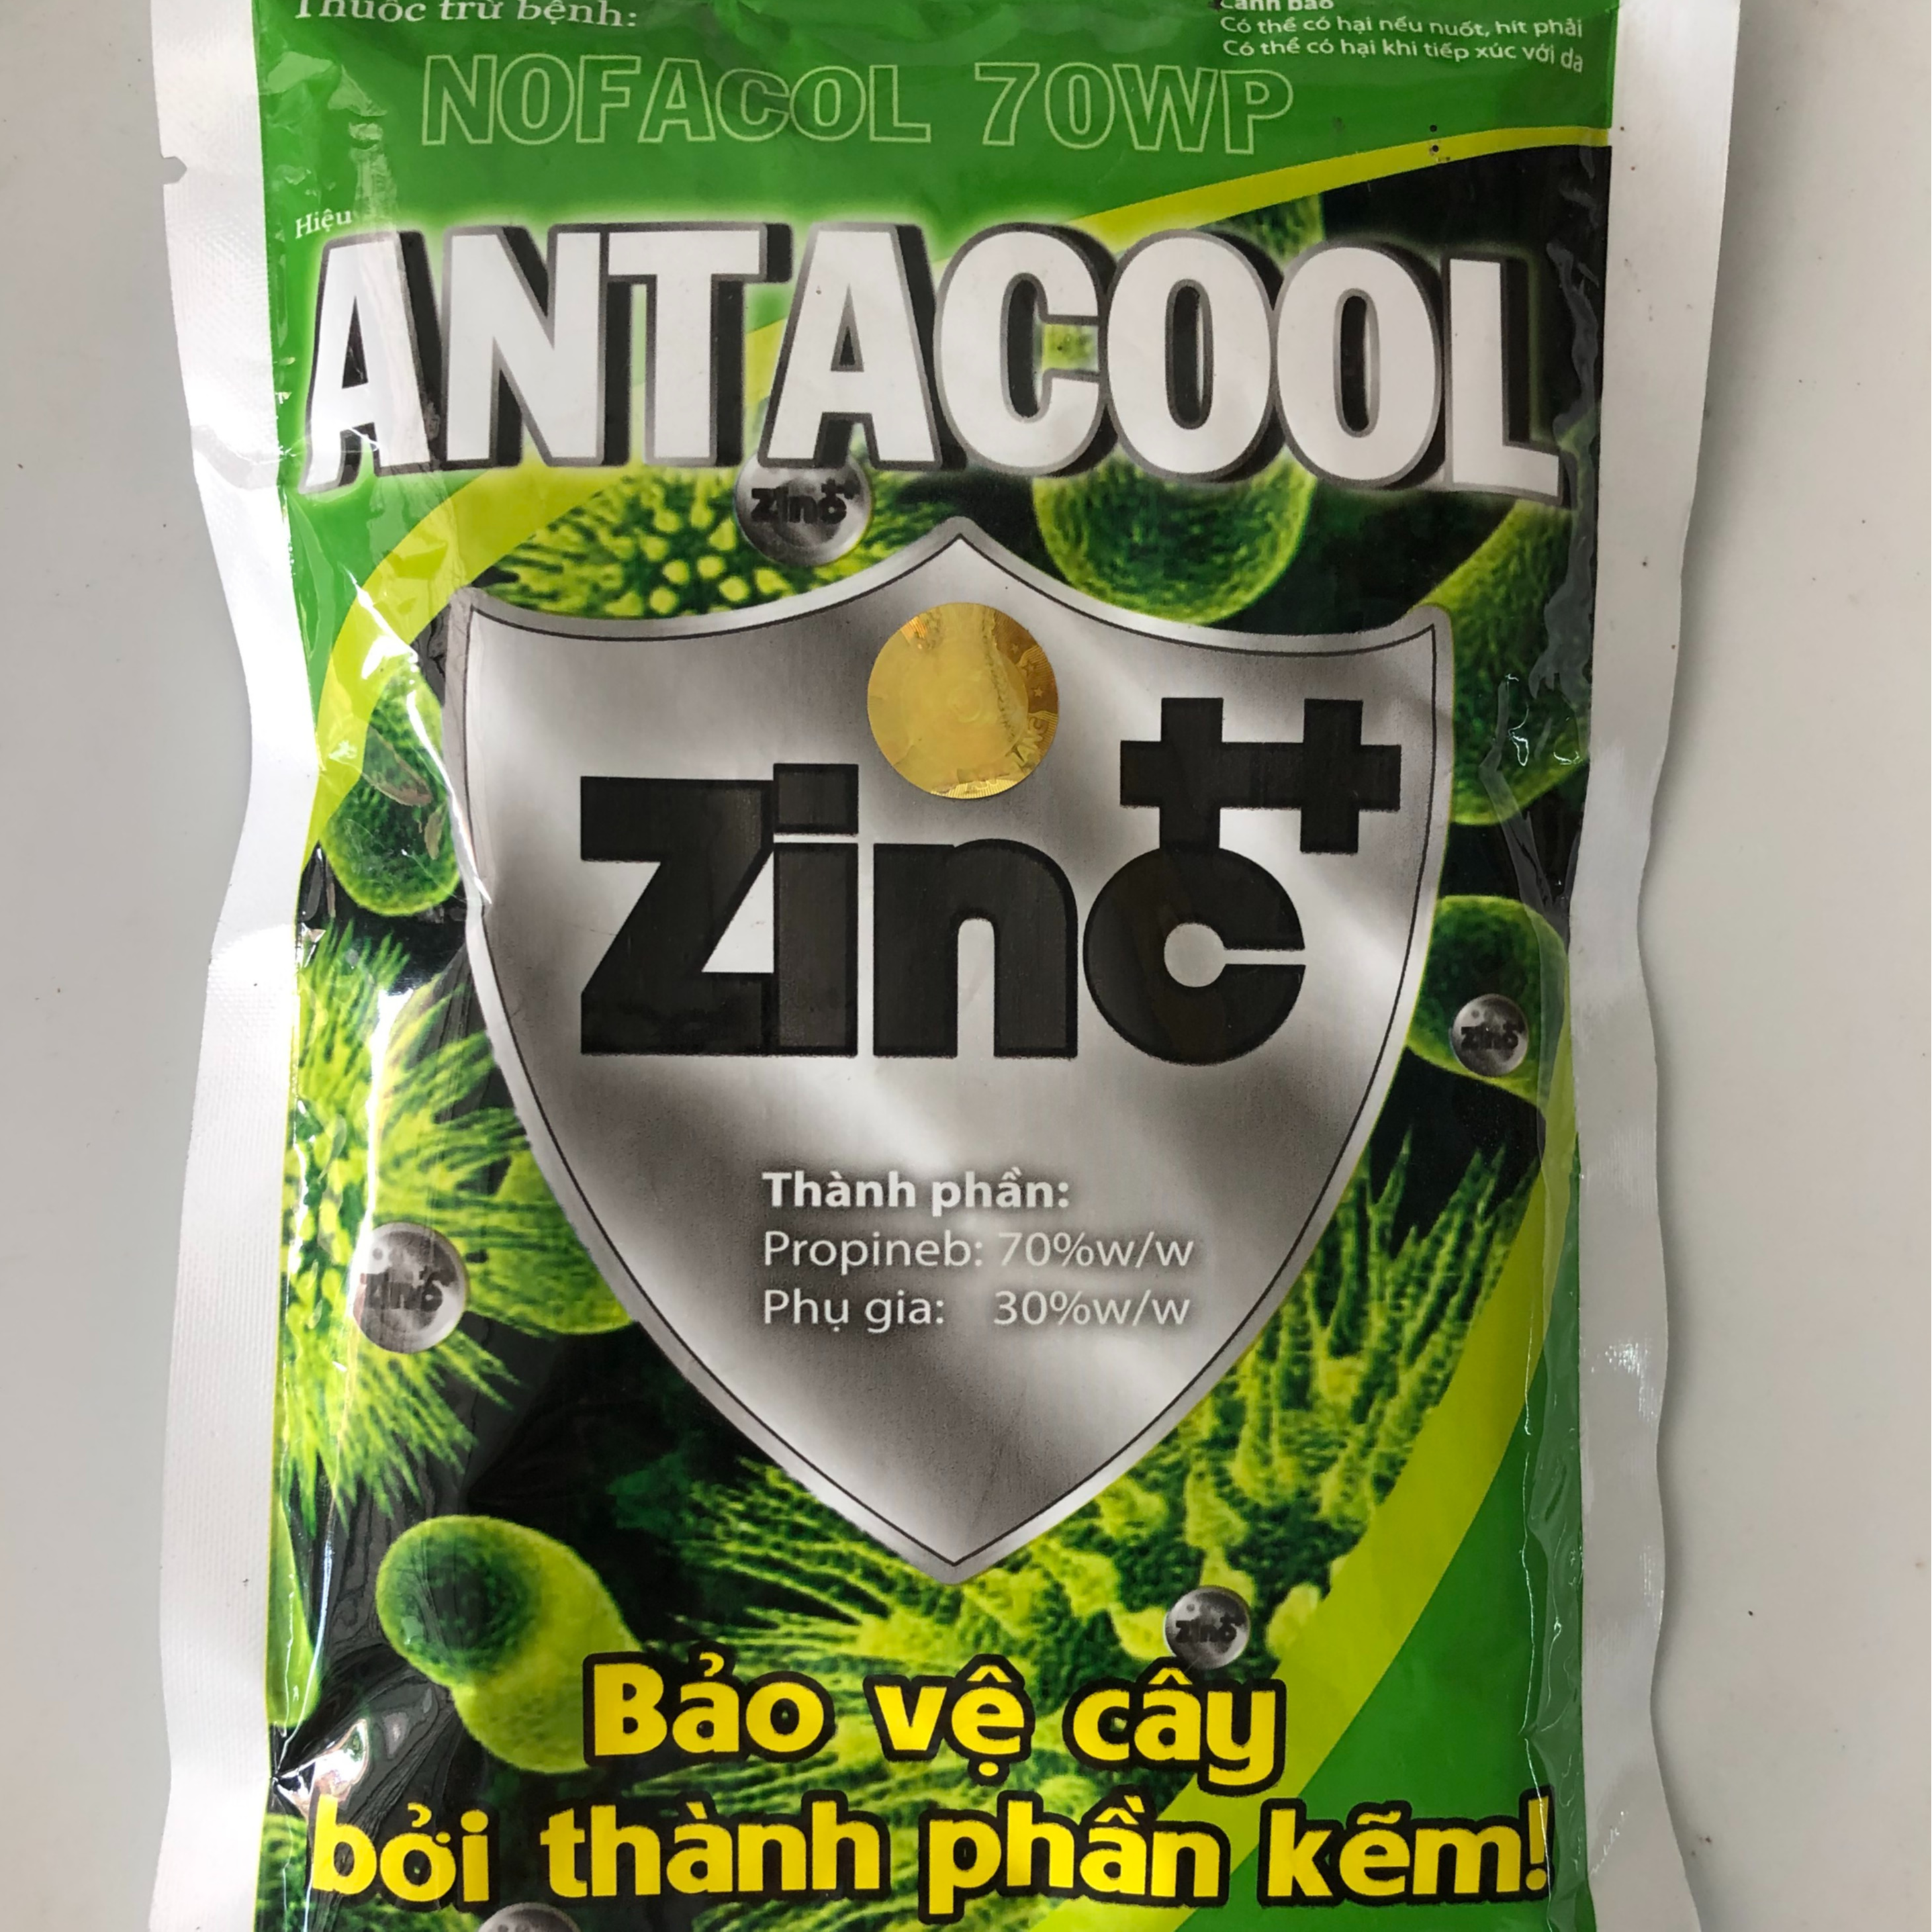 Thuốc trừ bệnh Nofacol 70WP Antacool Zinc++ Bảo vệ cây bởi thành phần Kẽm